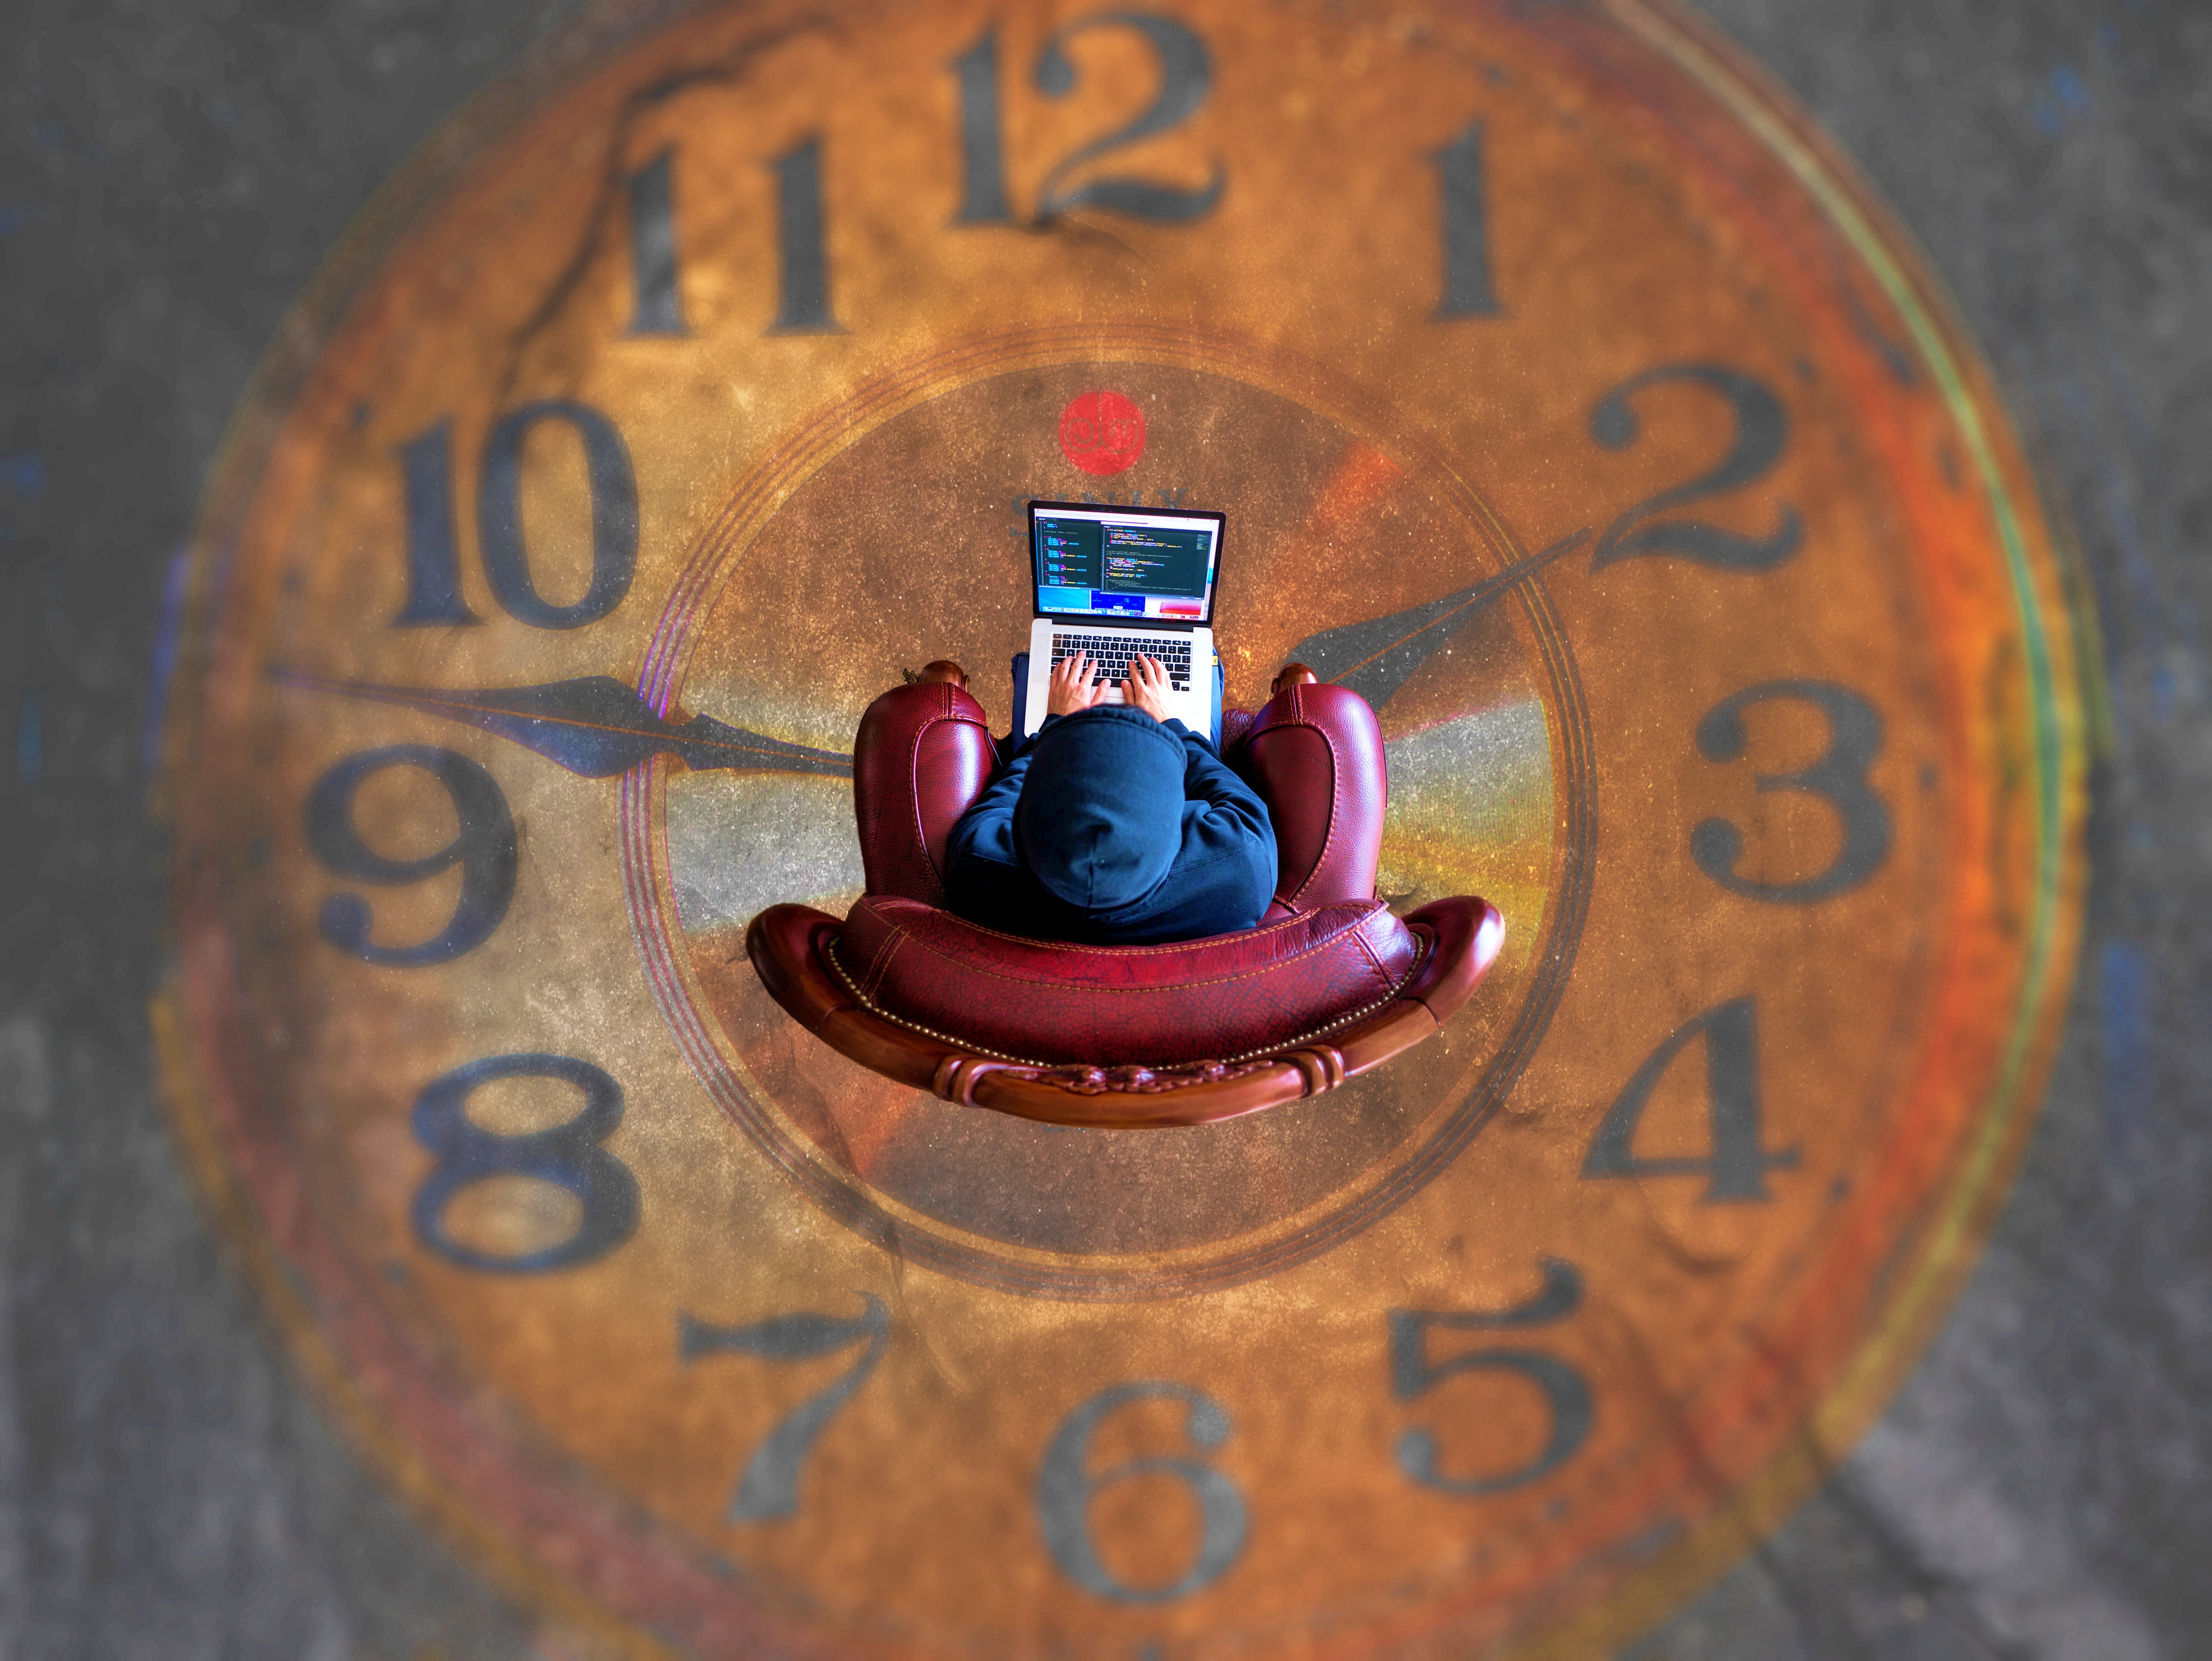 커다란 시계 위에서 의자에 앉아 노트북을 사용하는 사람